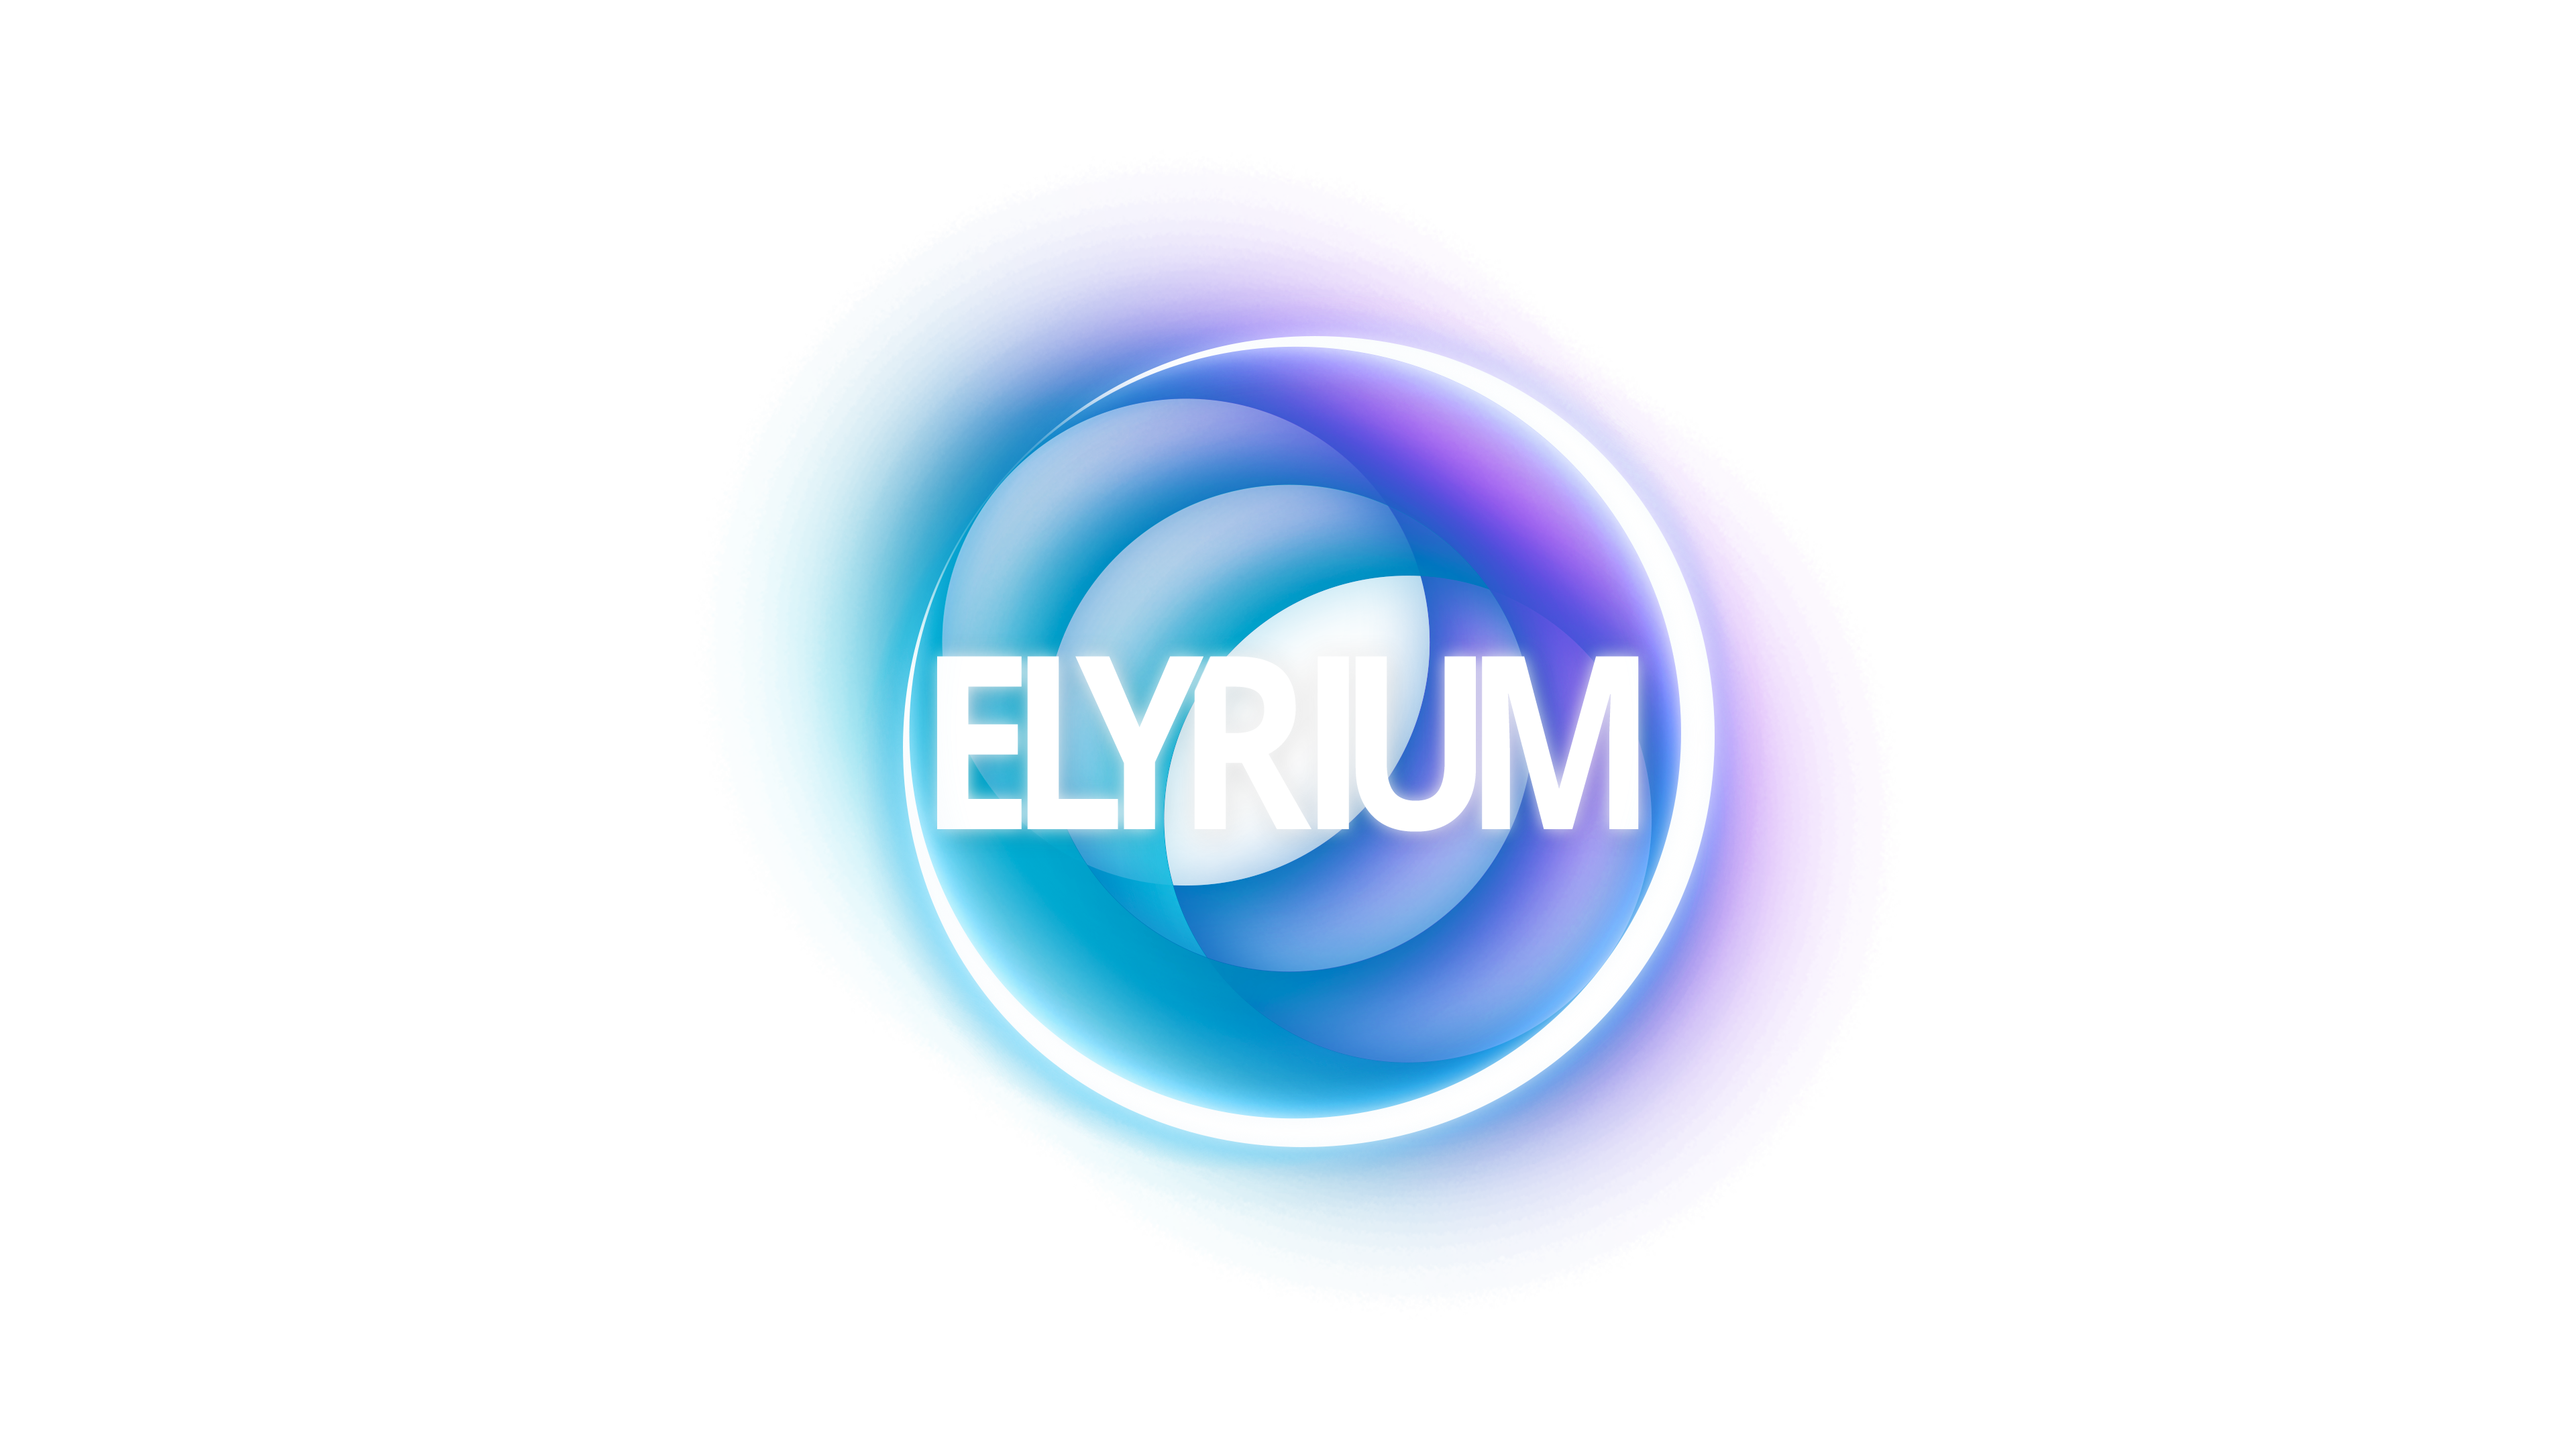 Elyrium Studios